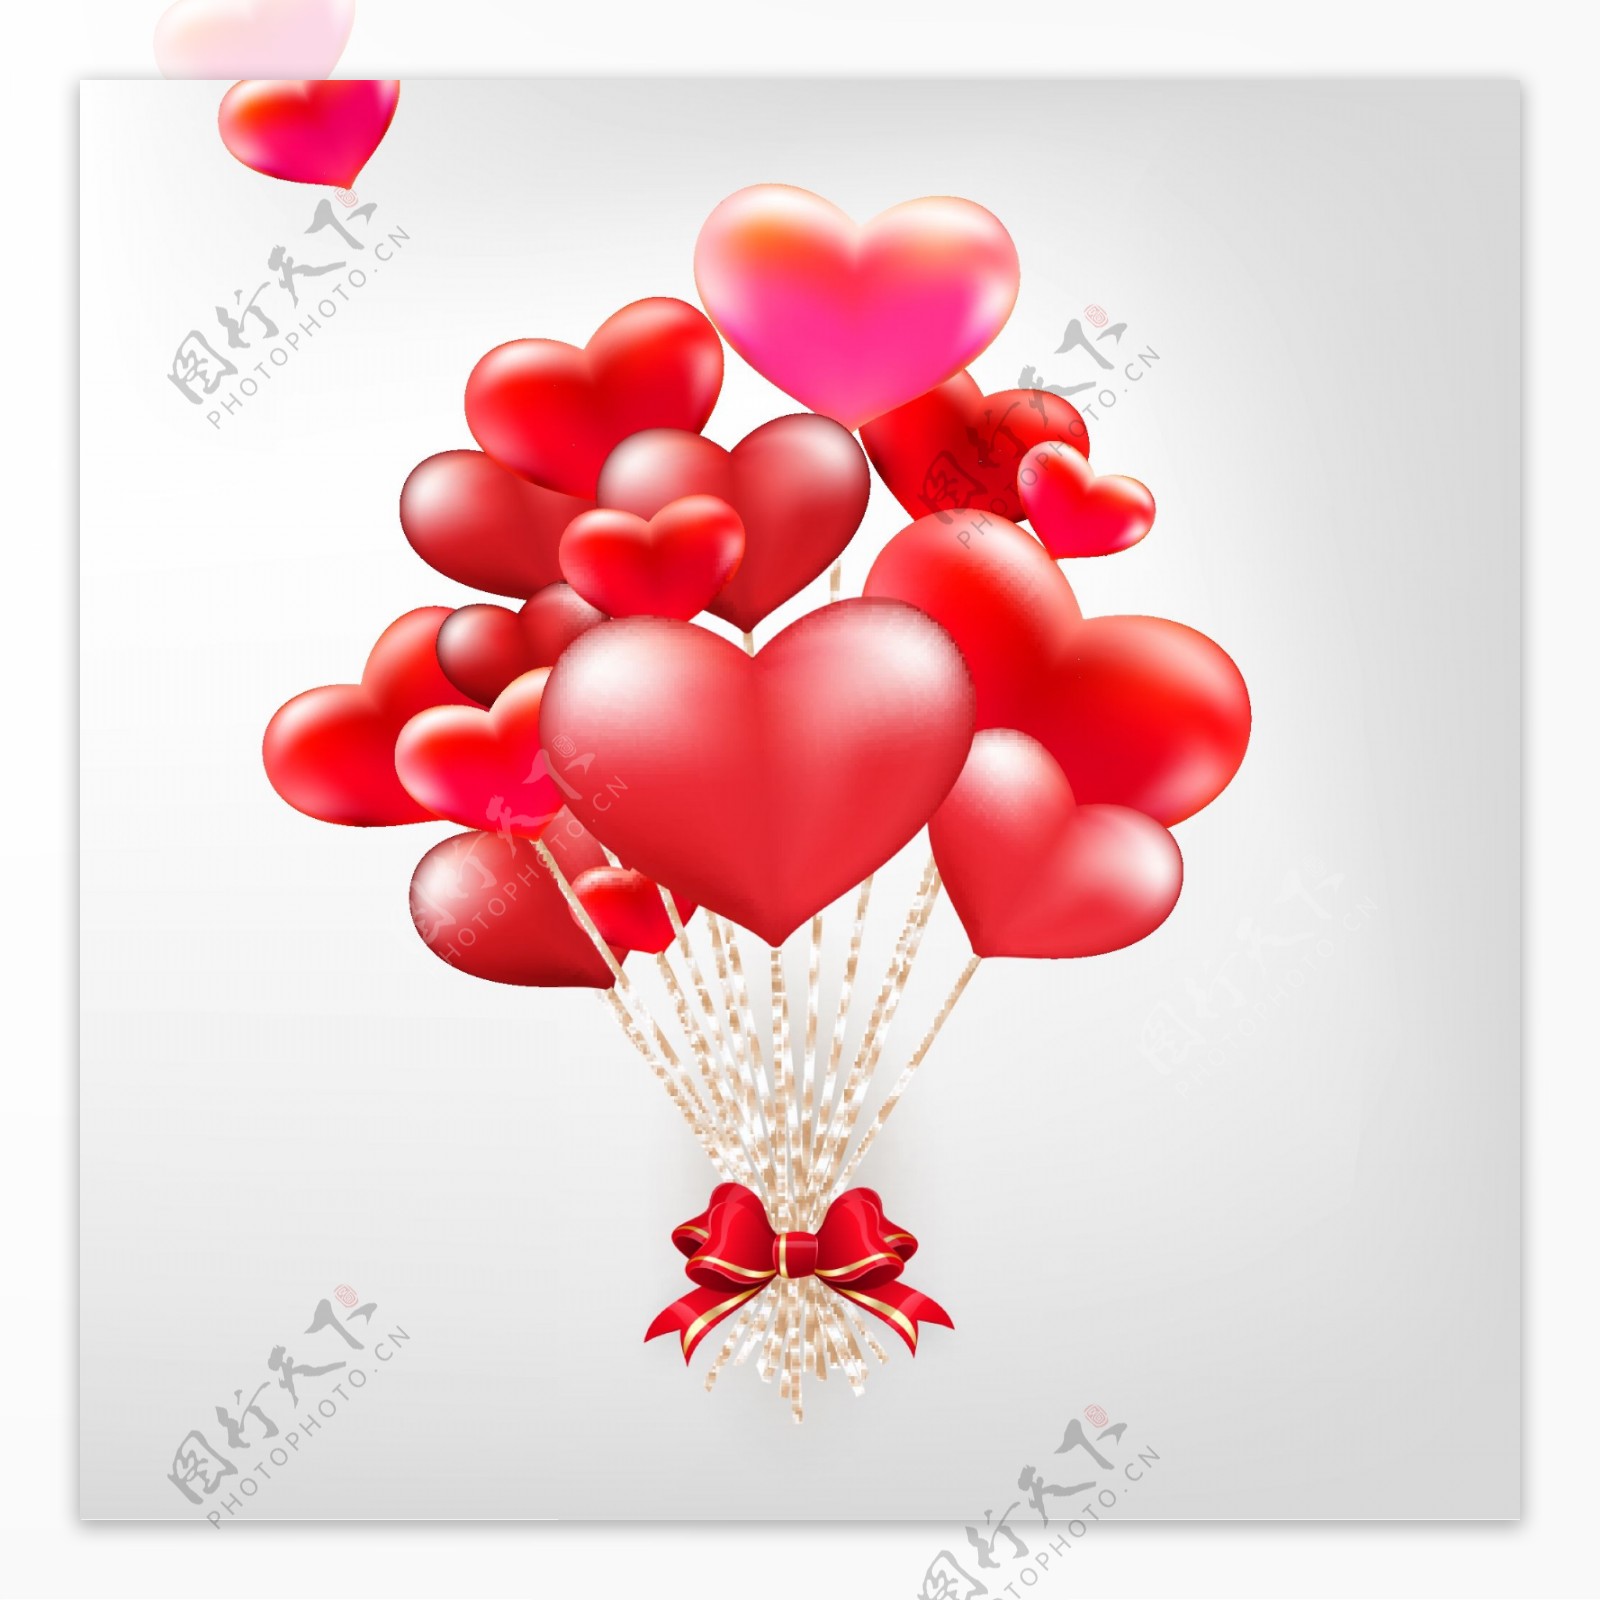 情人节气球